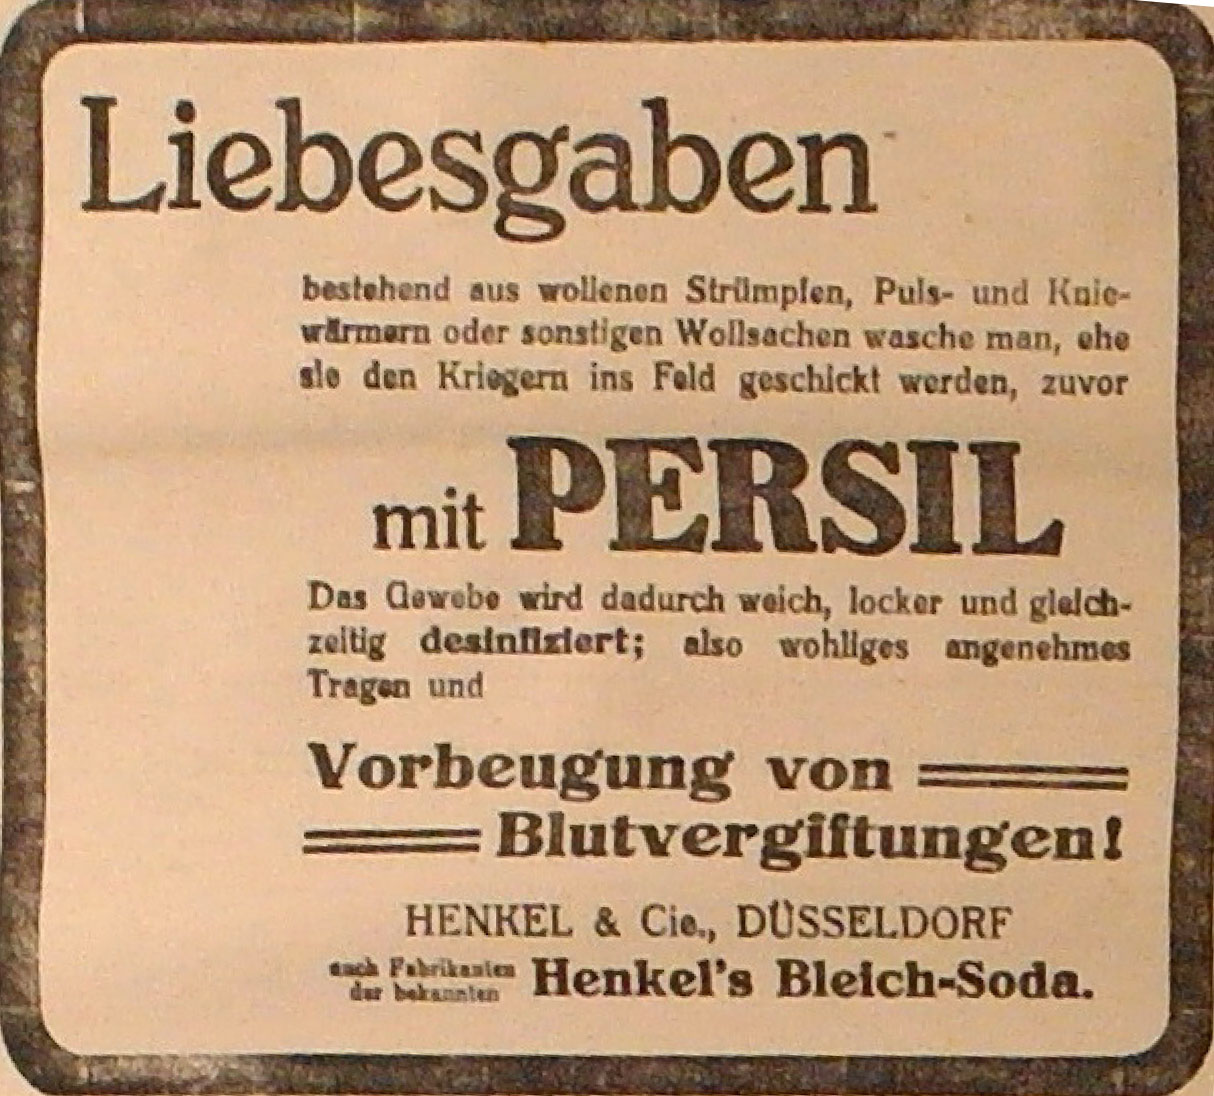 Anzeige in der Deutschen Reichs-Zeitung vom 13. Oktober 1914